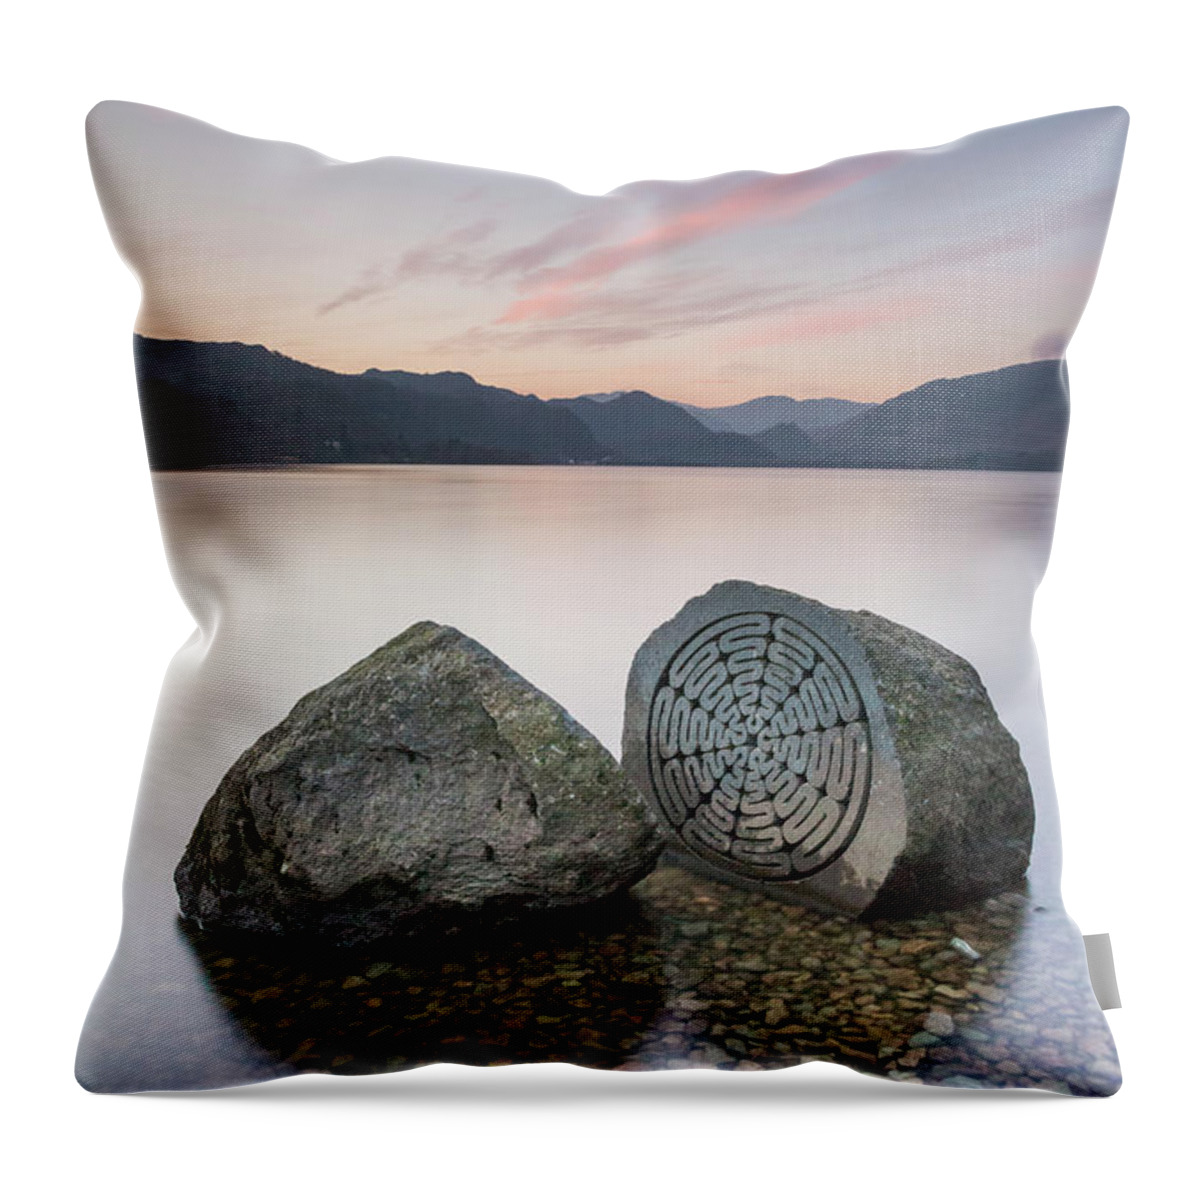 Millennium Stone Throw Pillow featuring the photograph Millennium Stone - Derwent Water by Anita Nicholson